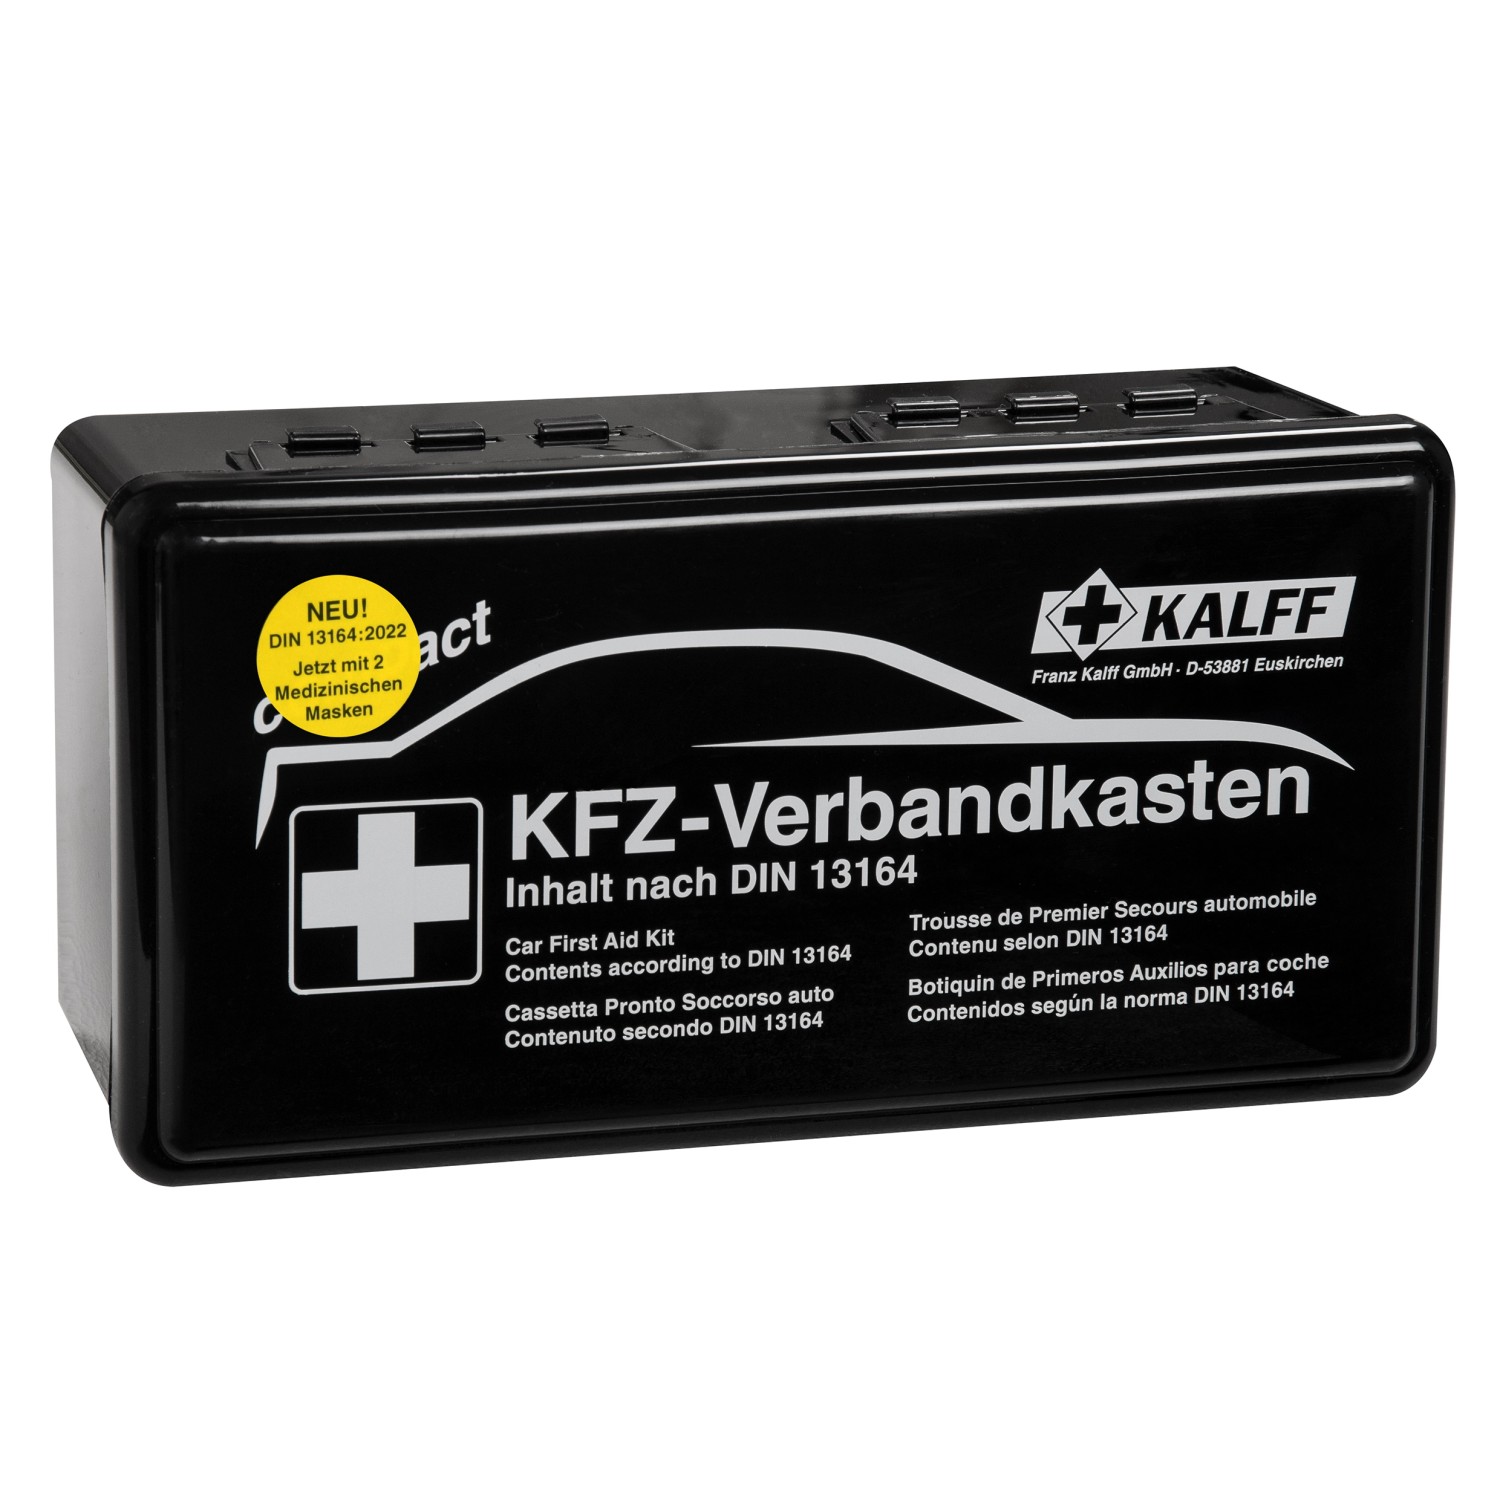 Kalff Kfz-Verbandkasten Compact DIN 13164:2022 Erste-Hilfe-Set kaufen bei  OBI